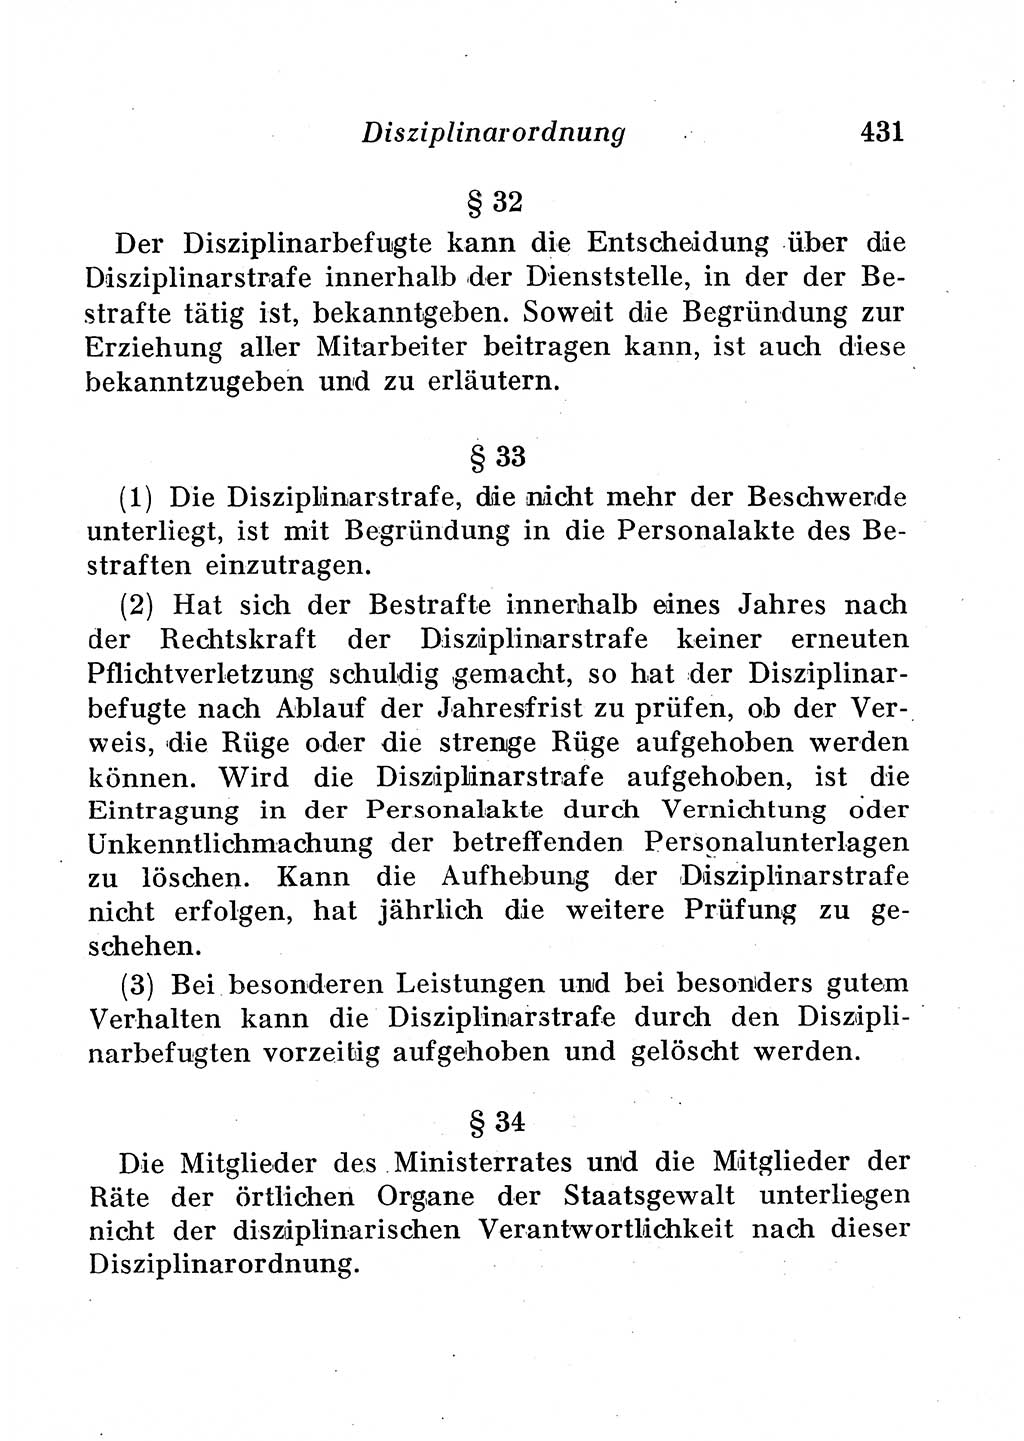 Staats- und verwaltungsrechtliche Gesetze der Deutschen Demokratischen Republik (DDR) 1958, Seite 431 (StVerwR Ges. DDR 1958, S. 431)